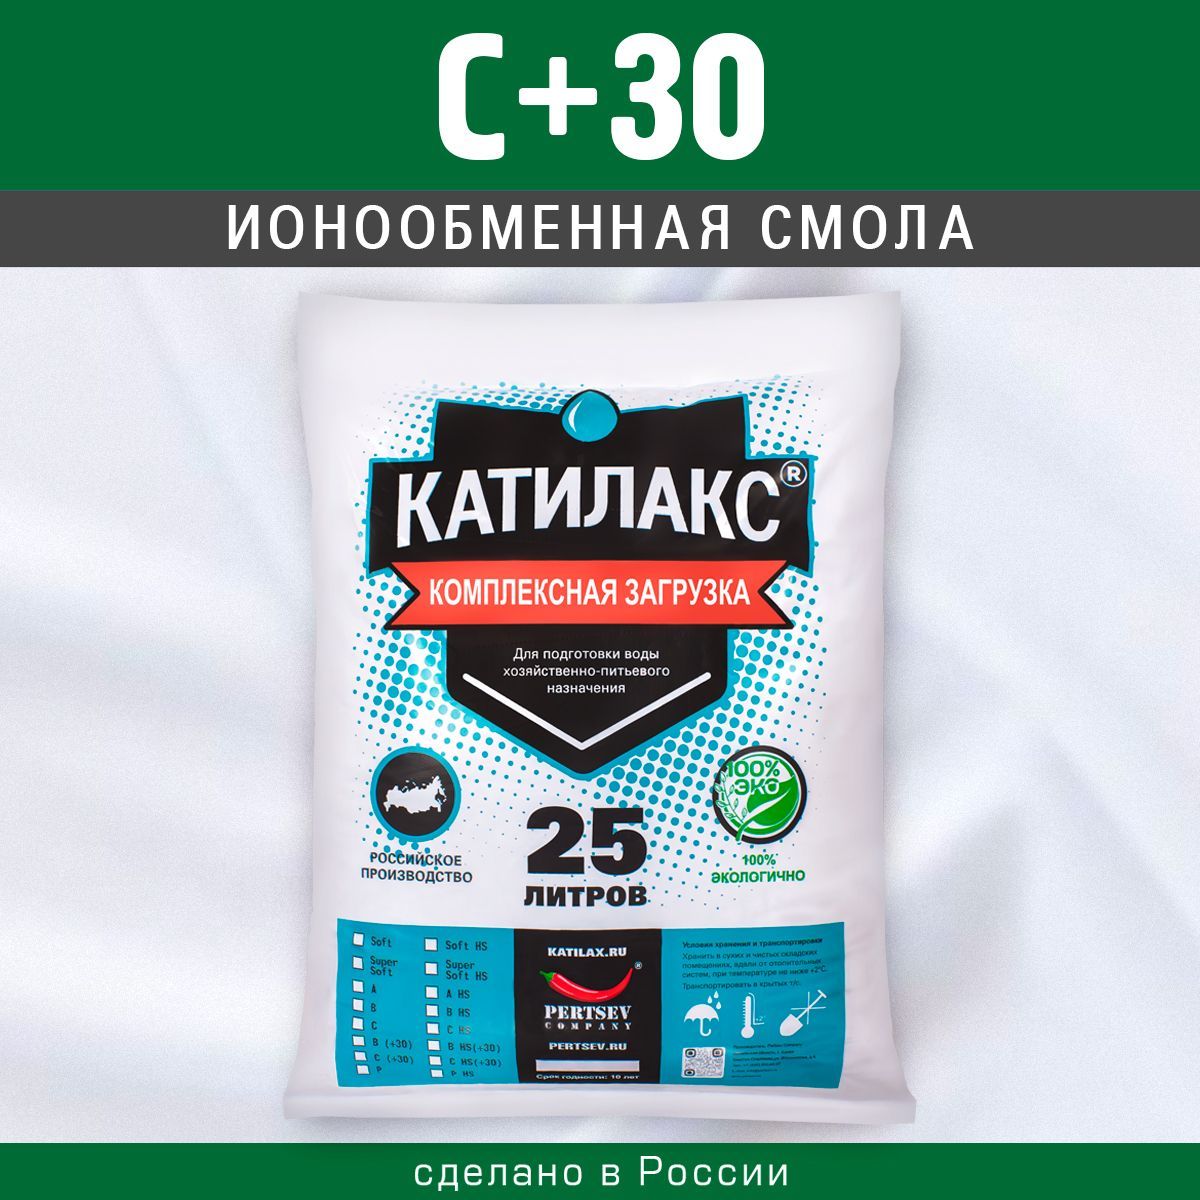 Ионообменная смола Катилакс C+30, 25 литров